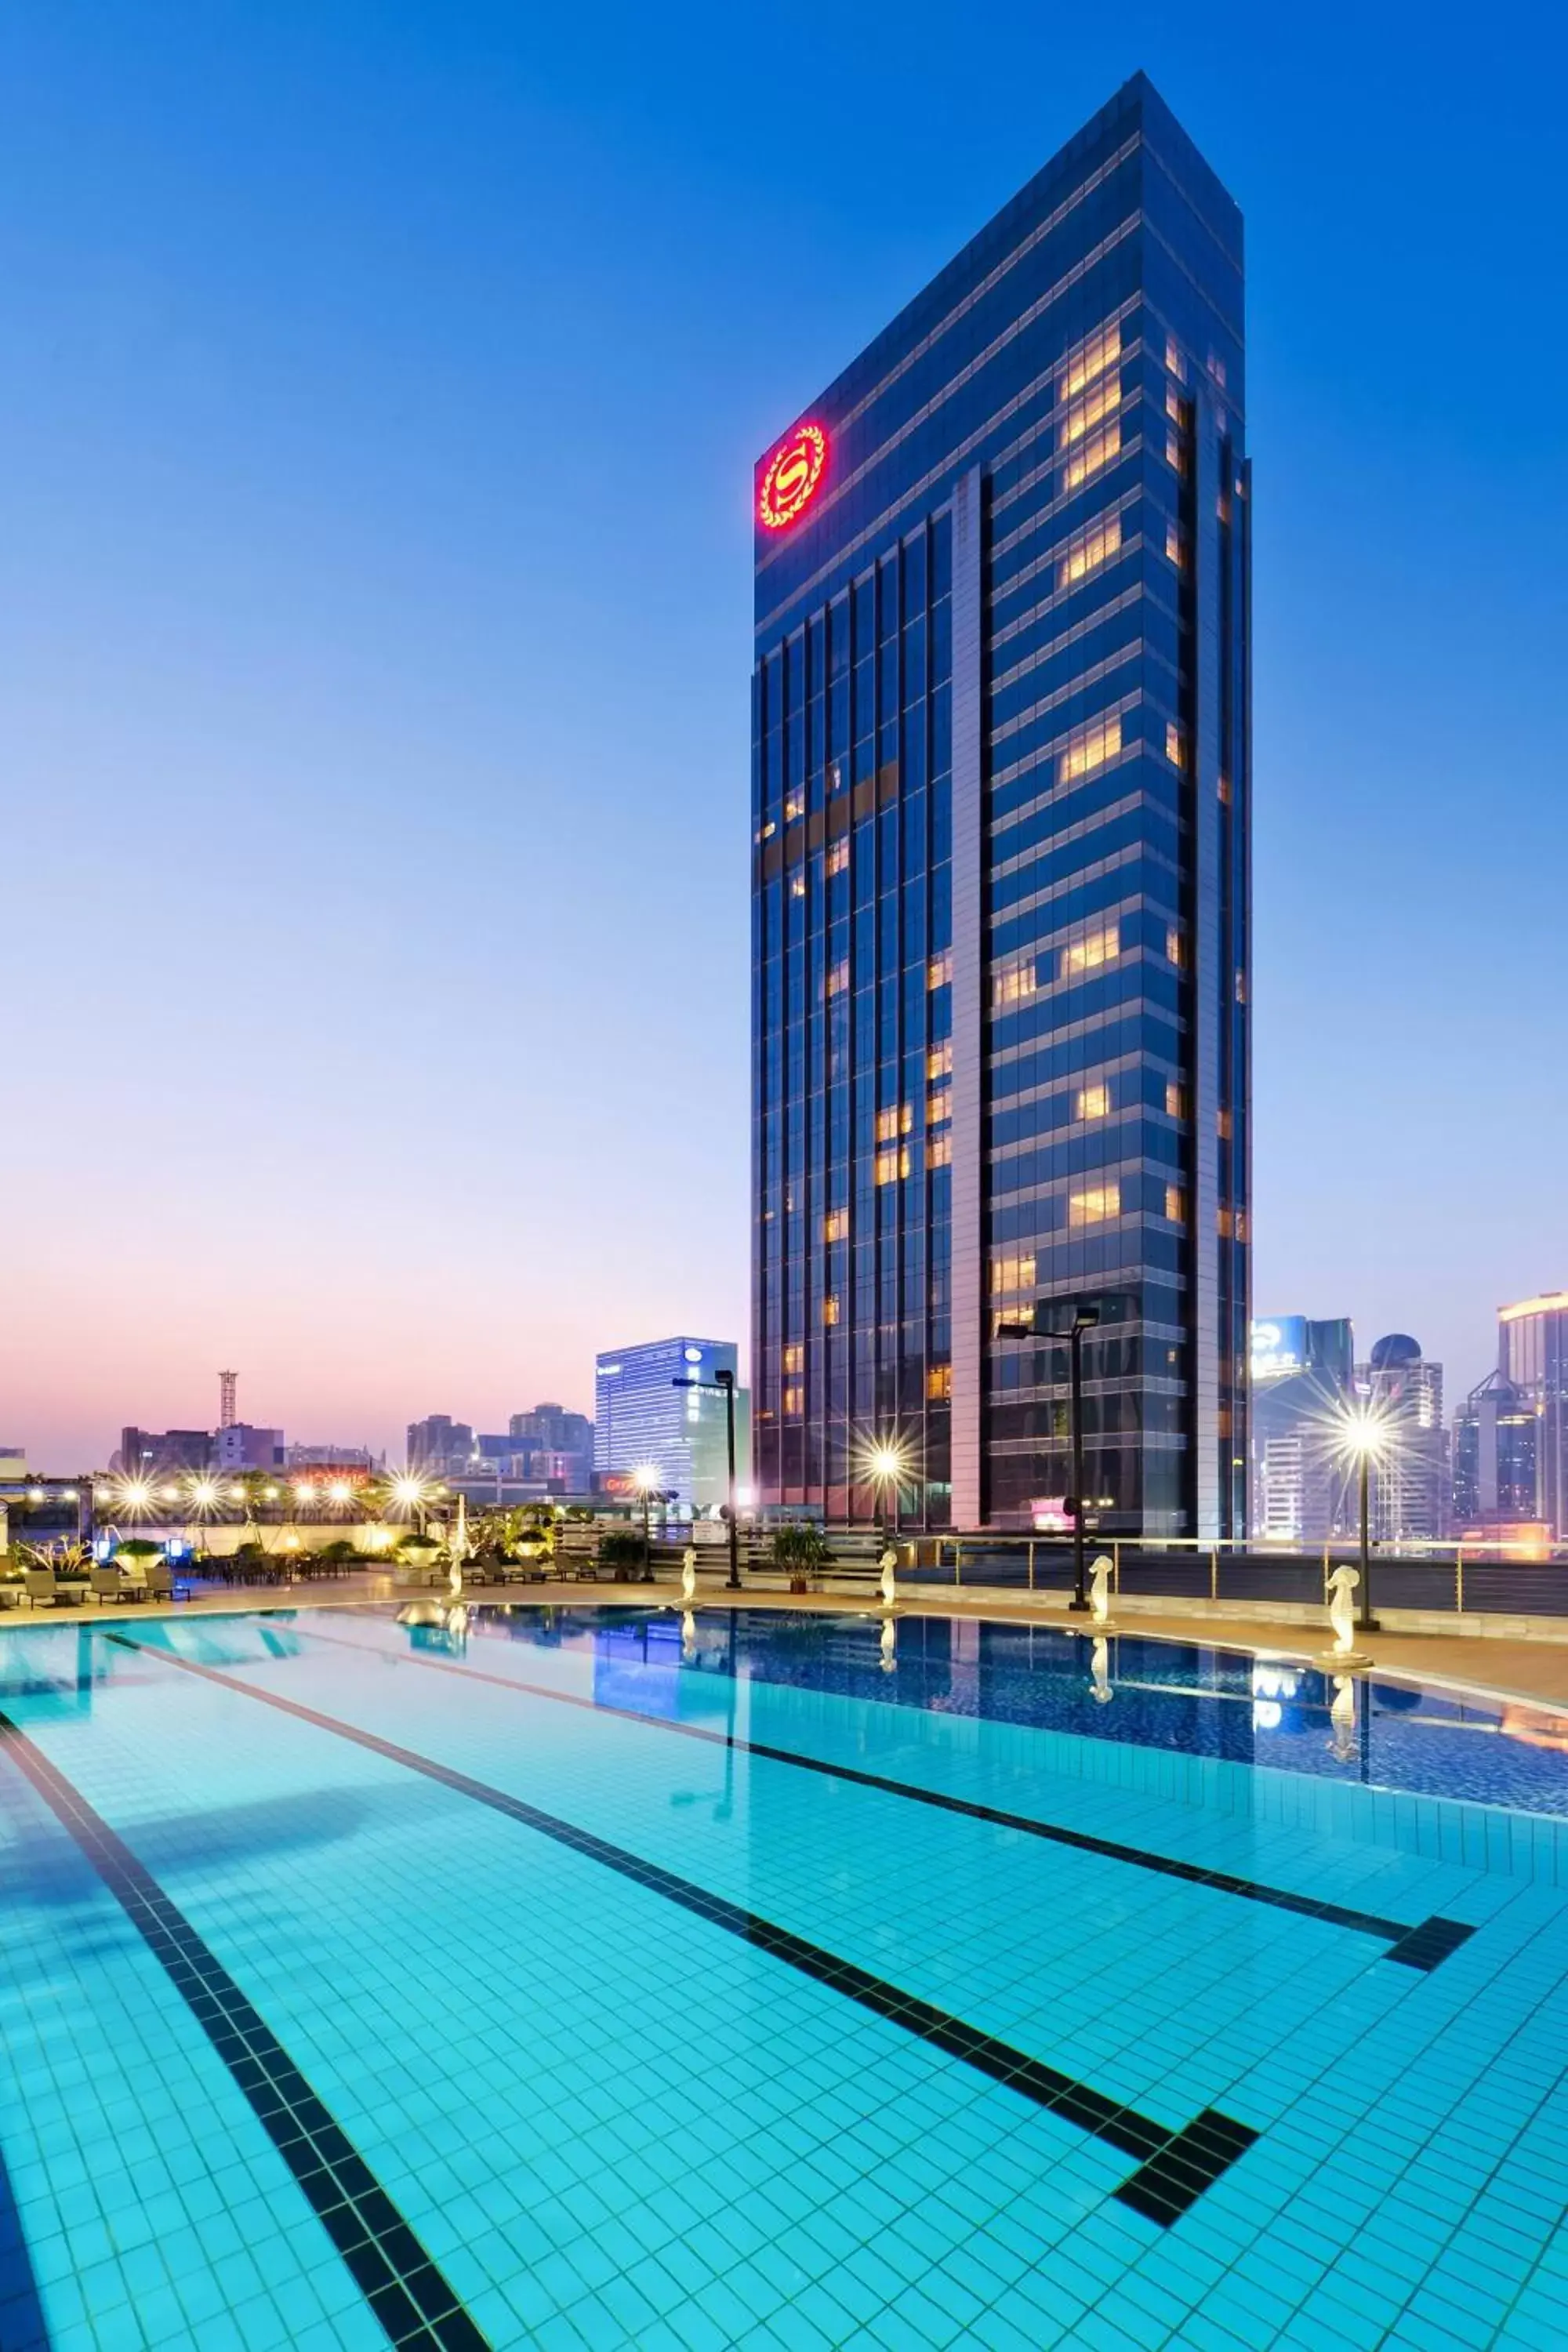 Swimming Pool in Sheraton Guangzhou Hotel